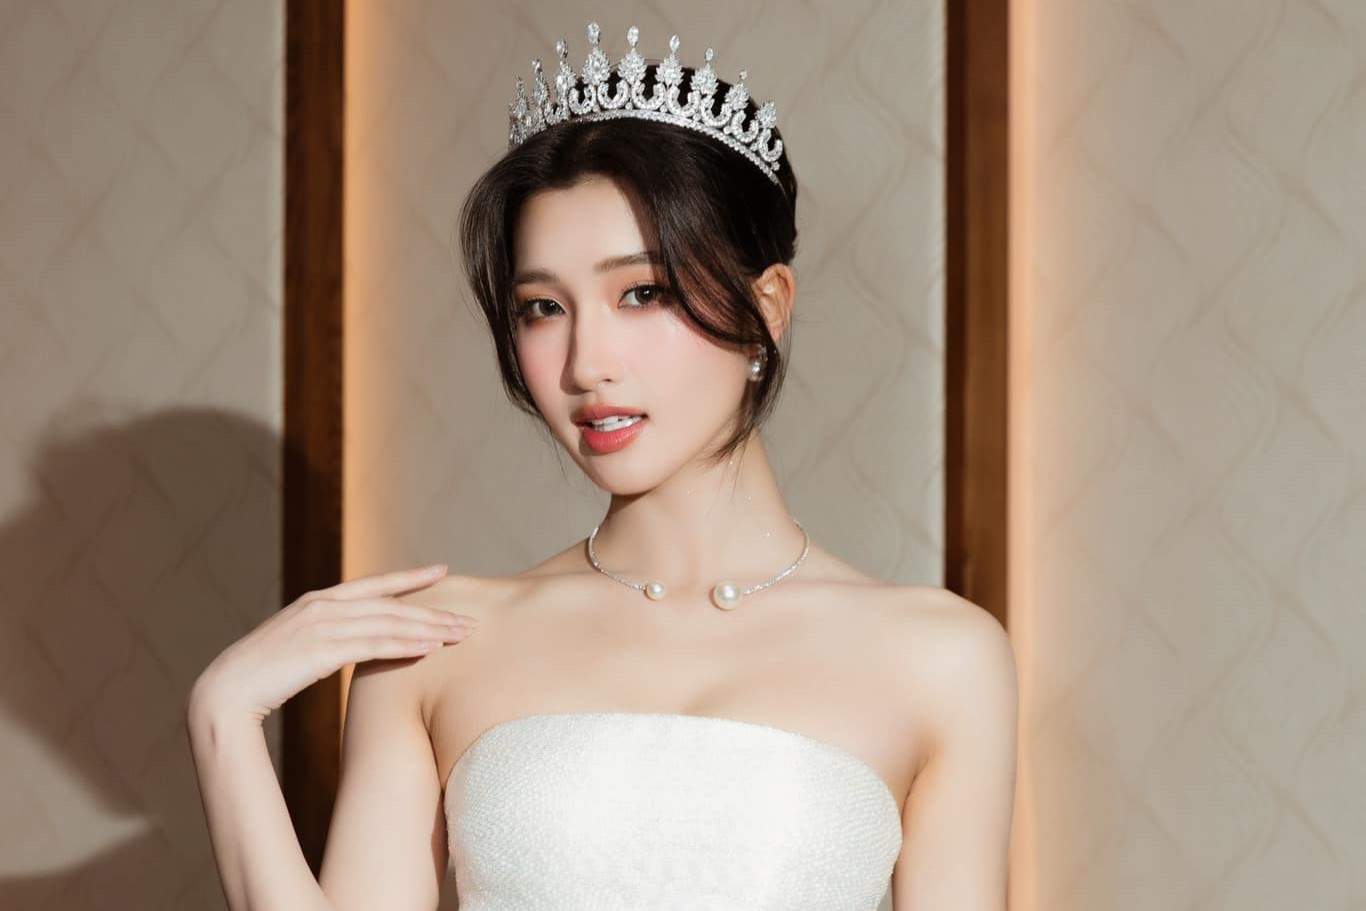 Á hậu Phương Nhi được dự đoán trở thành Á hậu 2 Miss International 2023